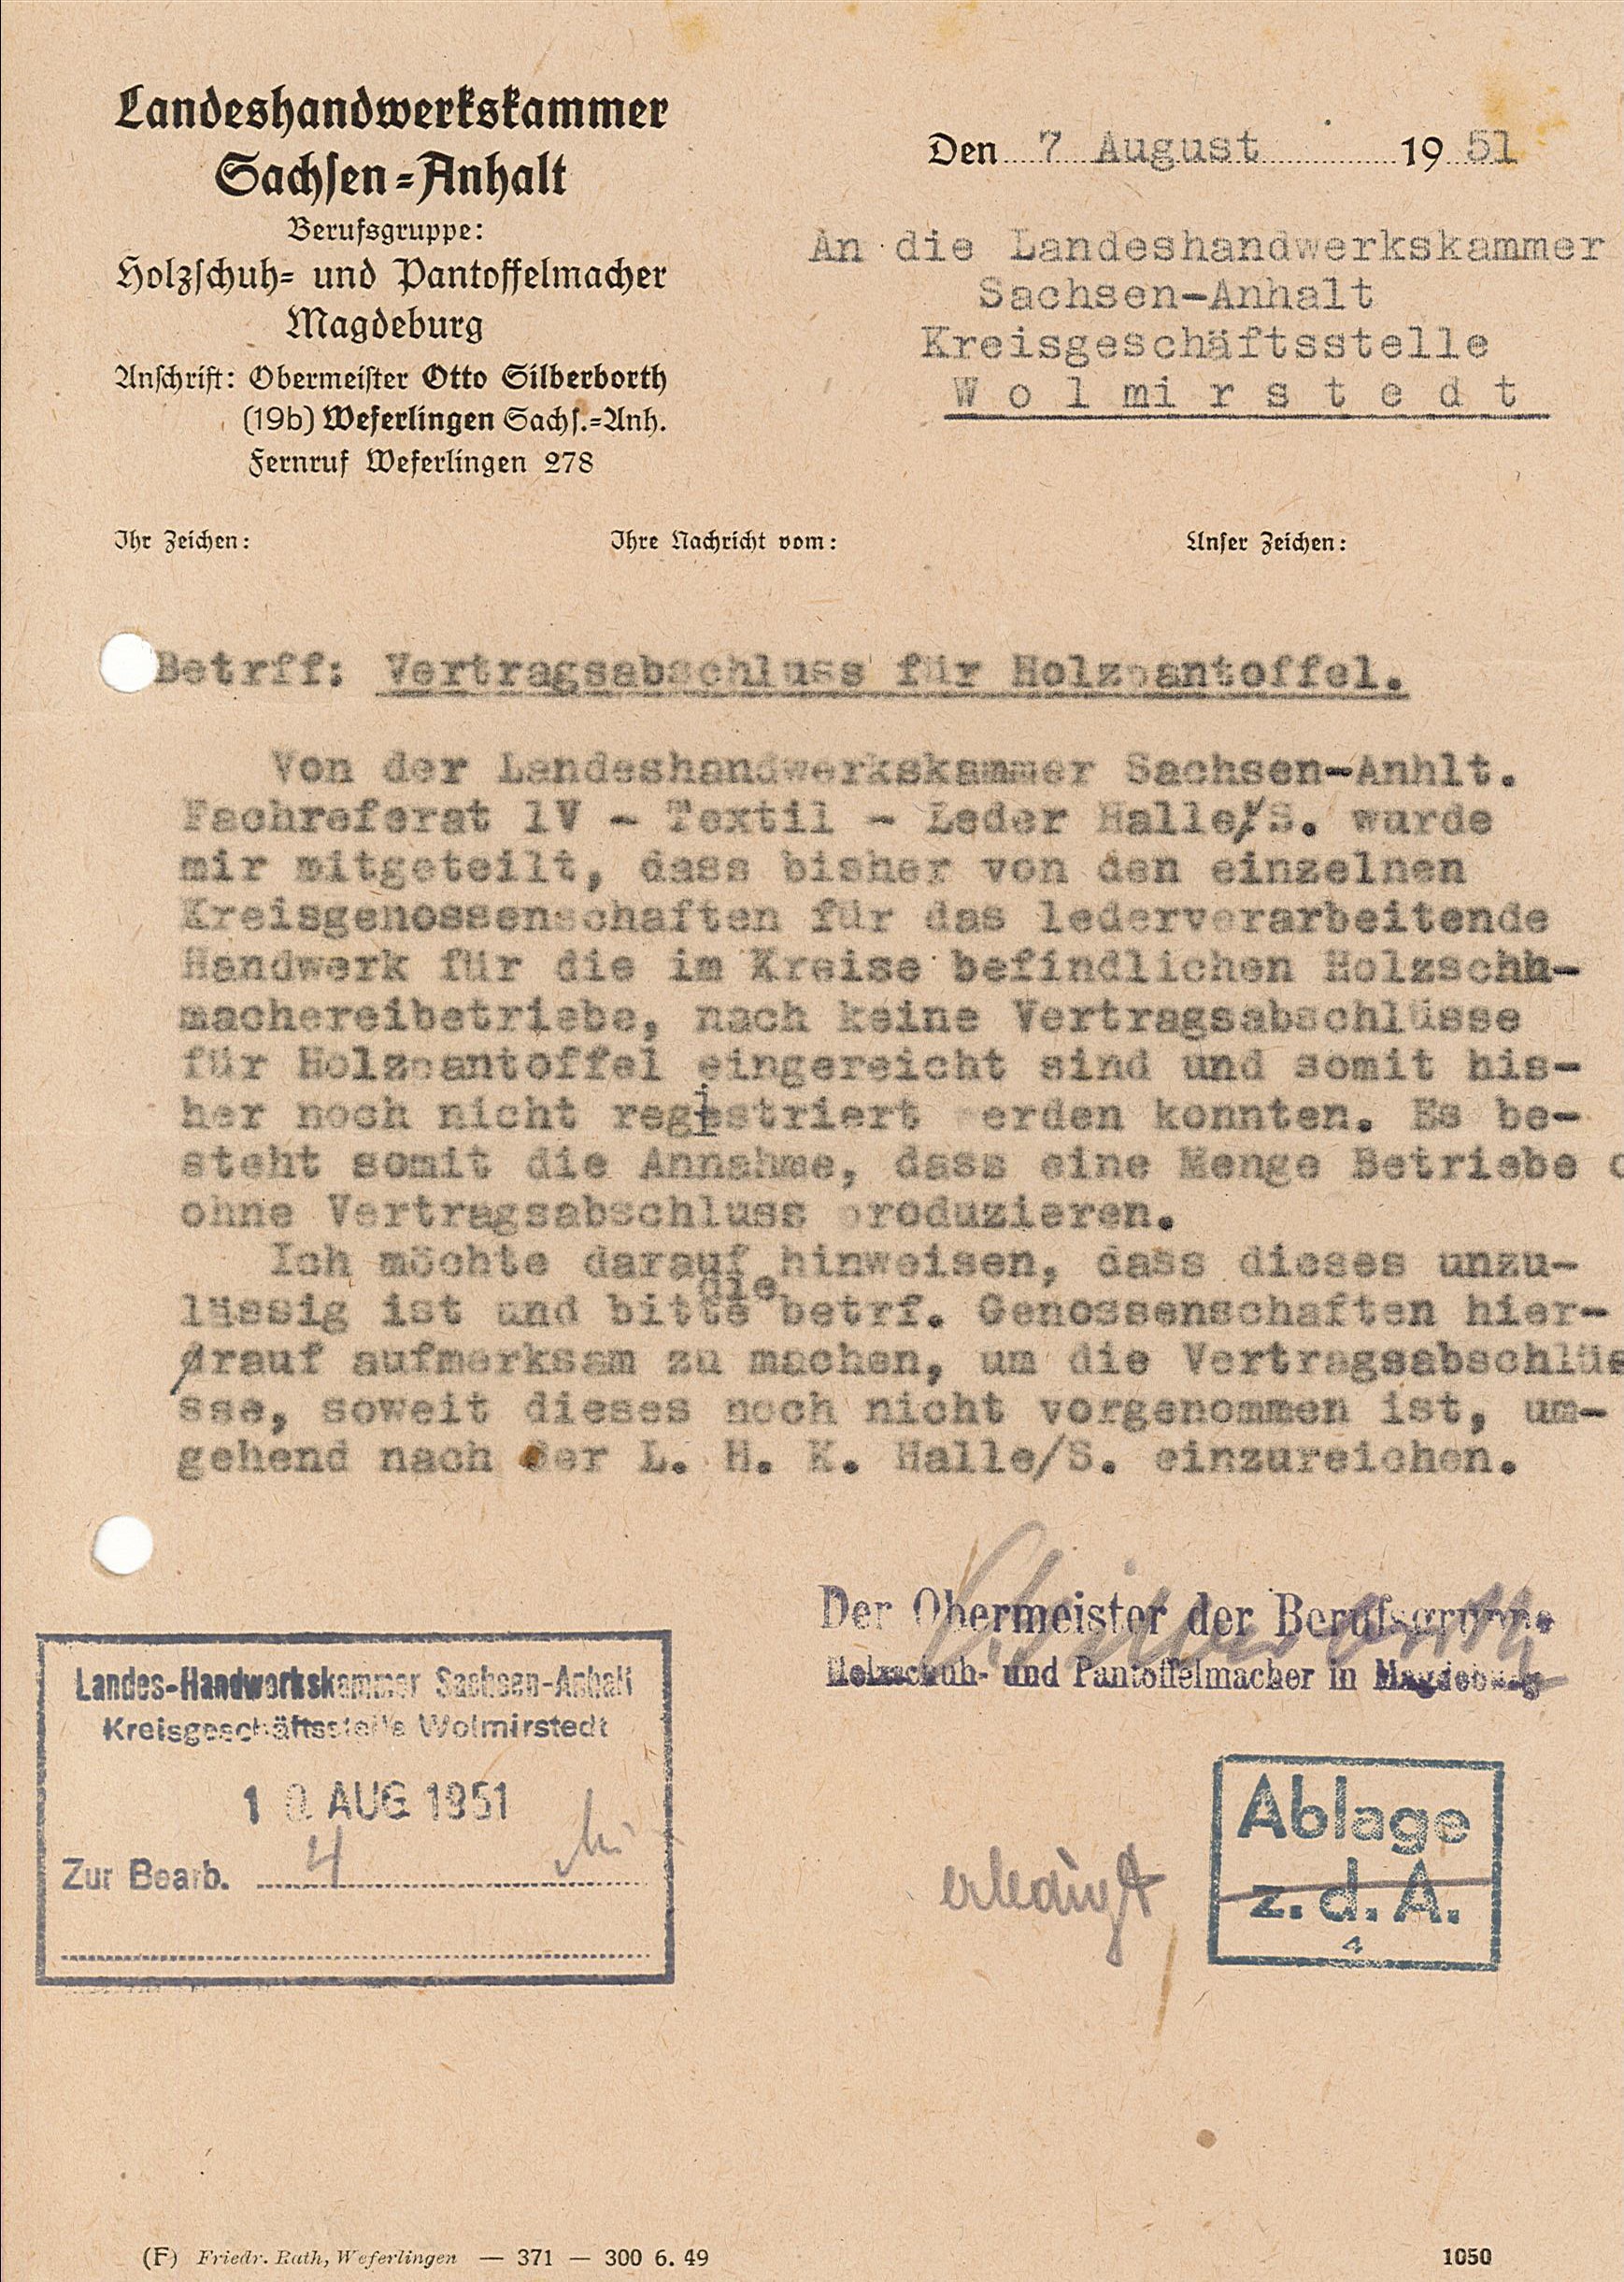 Vertragsabschluß für Holzpantoffeln, Wolmirstedt, 1951 (Museum Wolmirstedt RR-F)